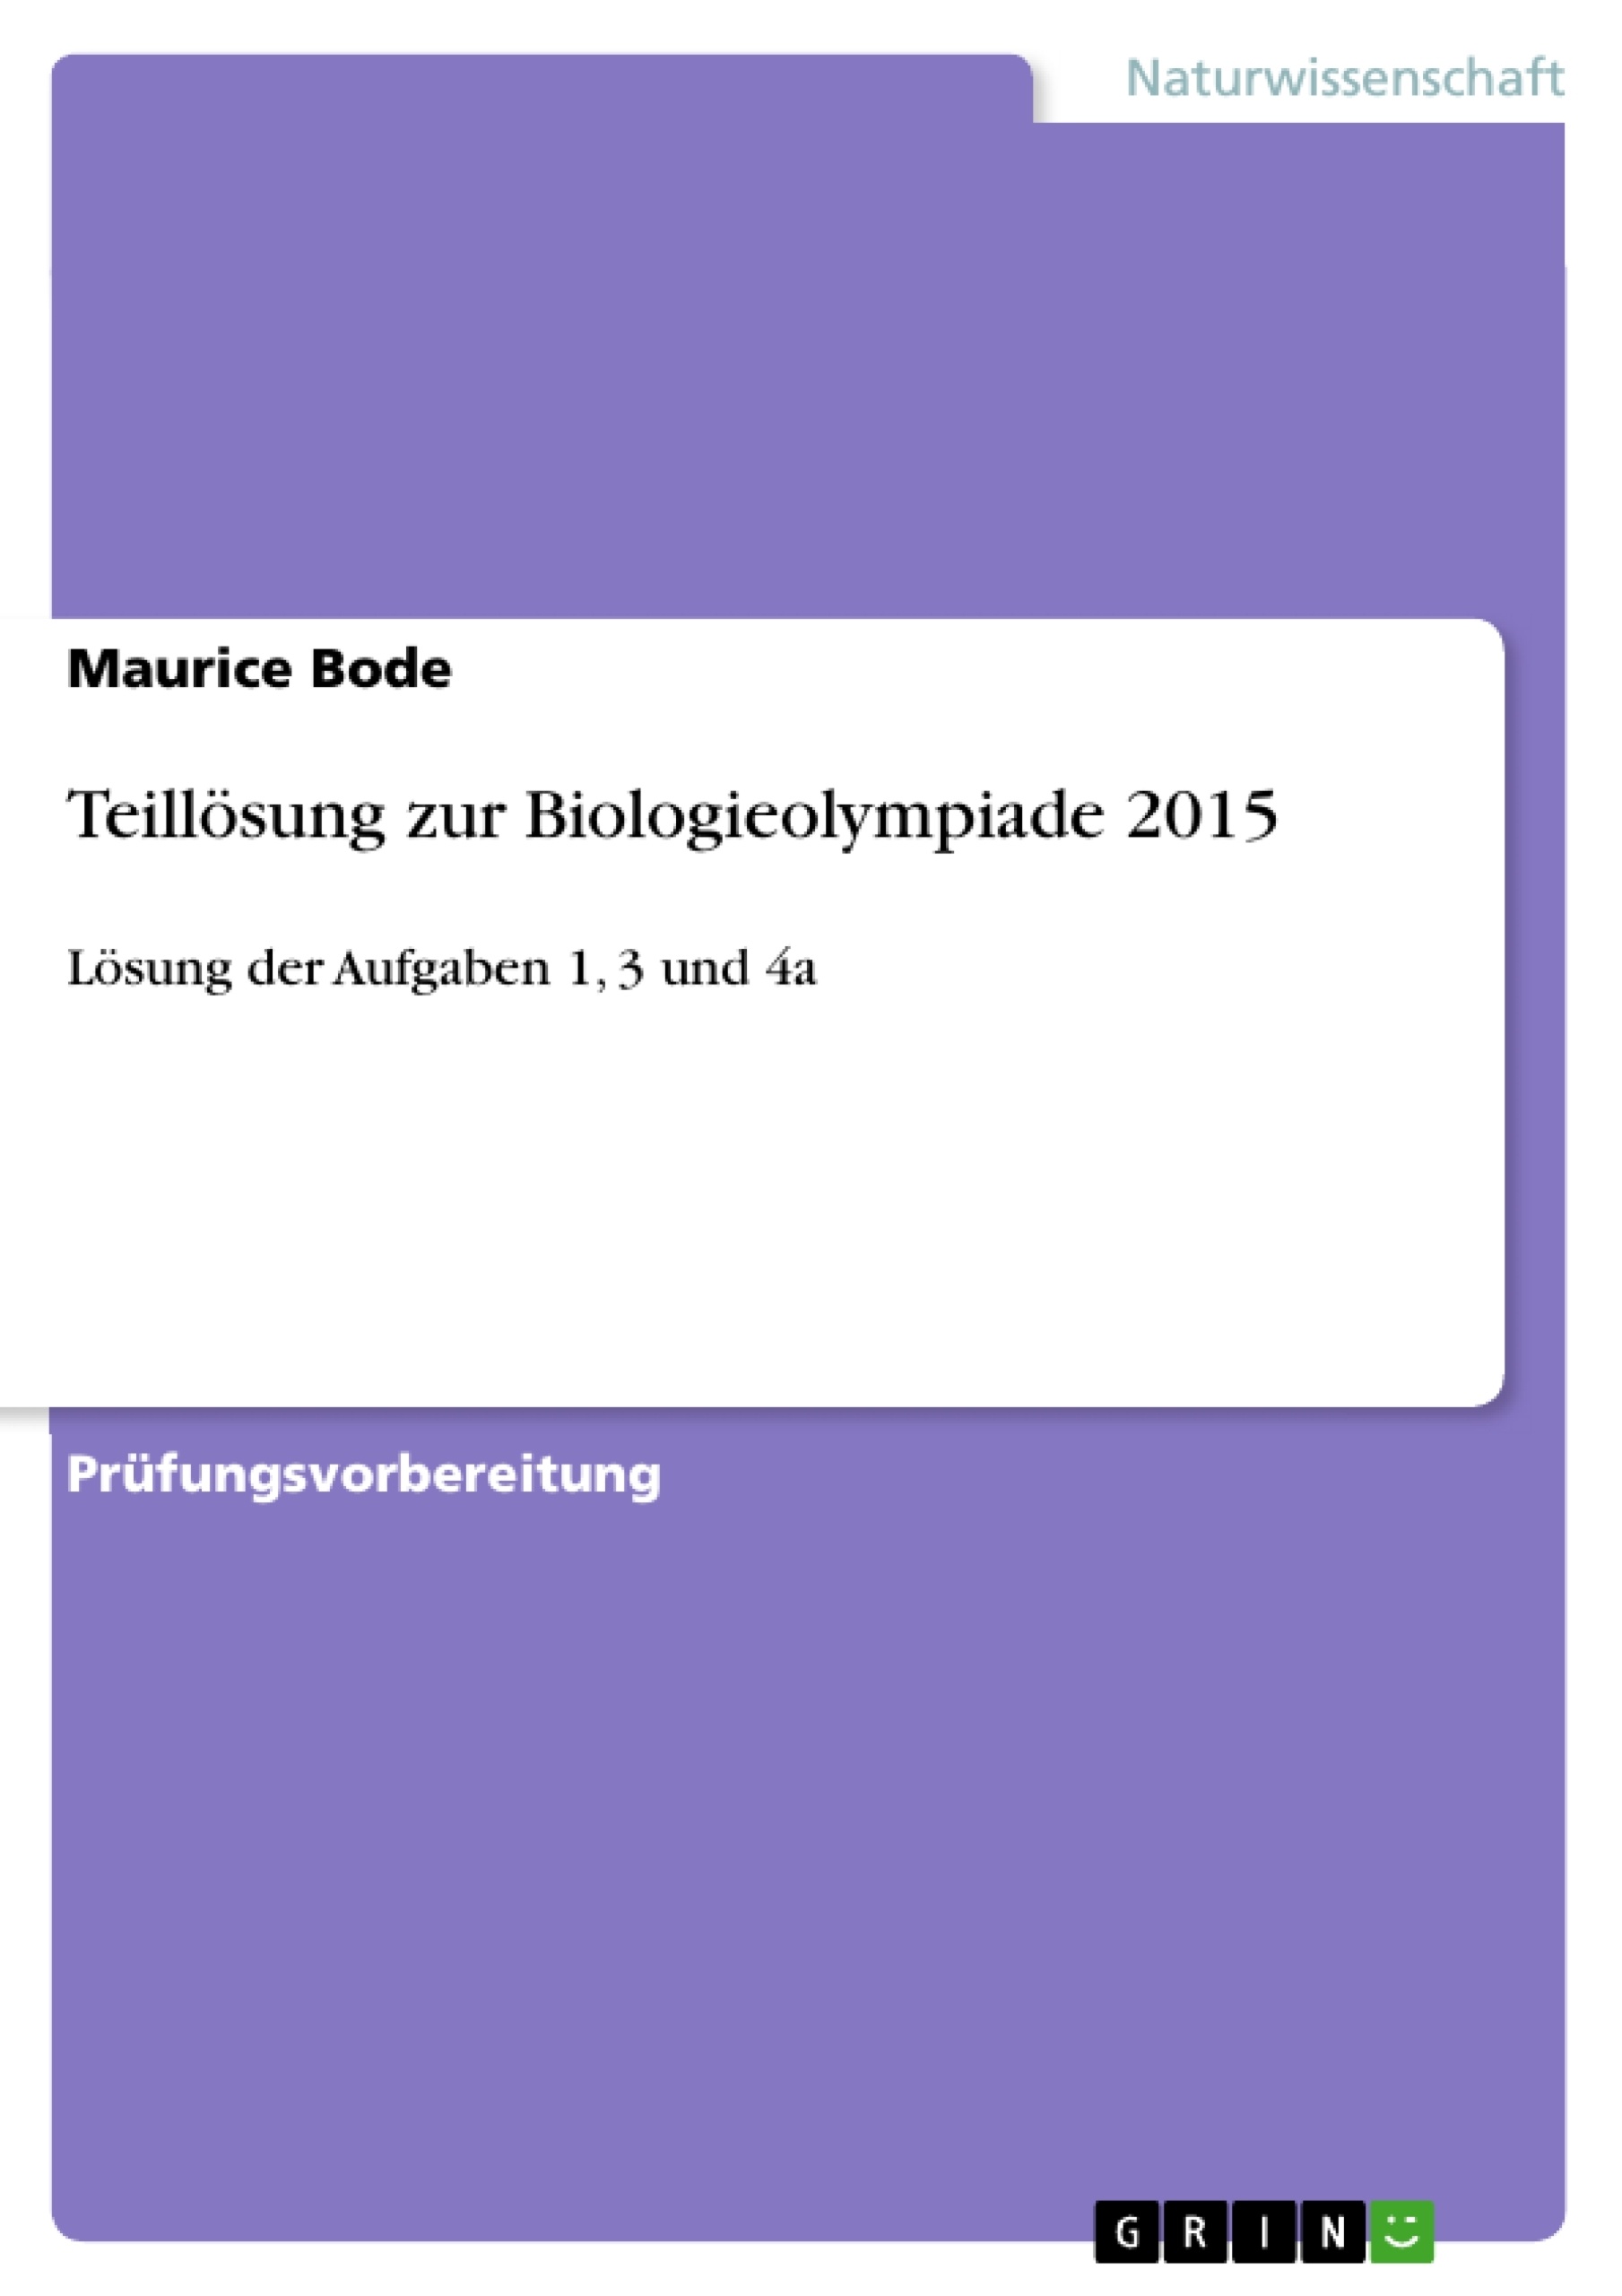 Title: Teillösung zur Biologieolympiade 2015